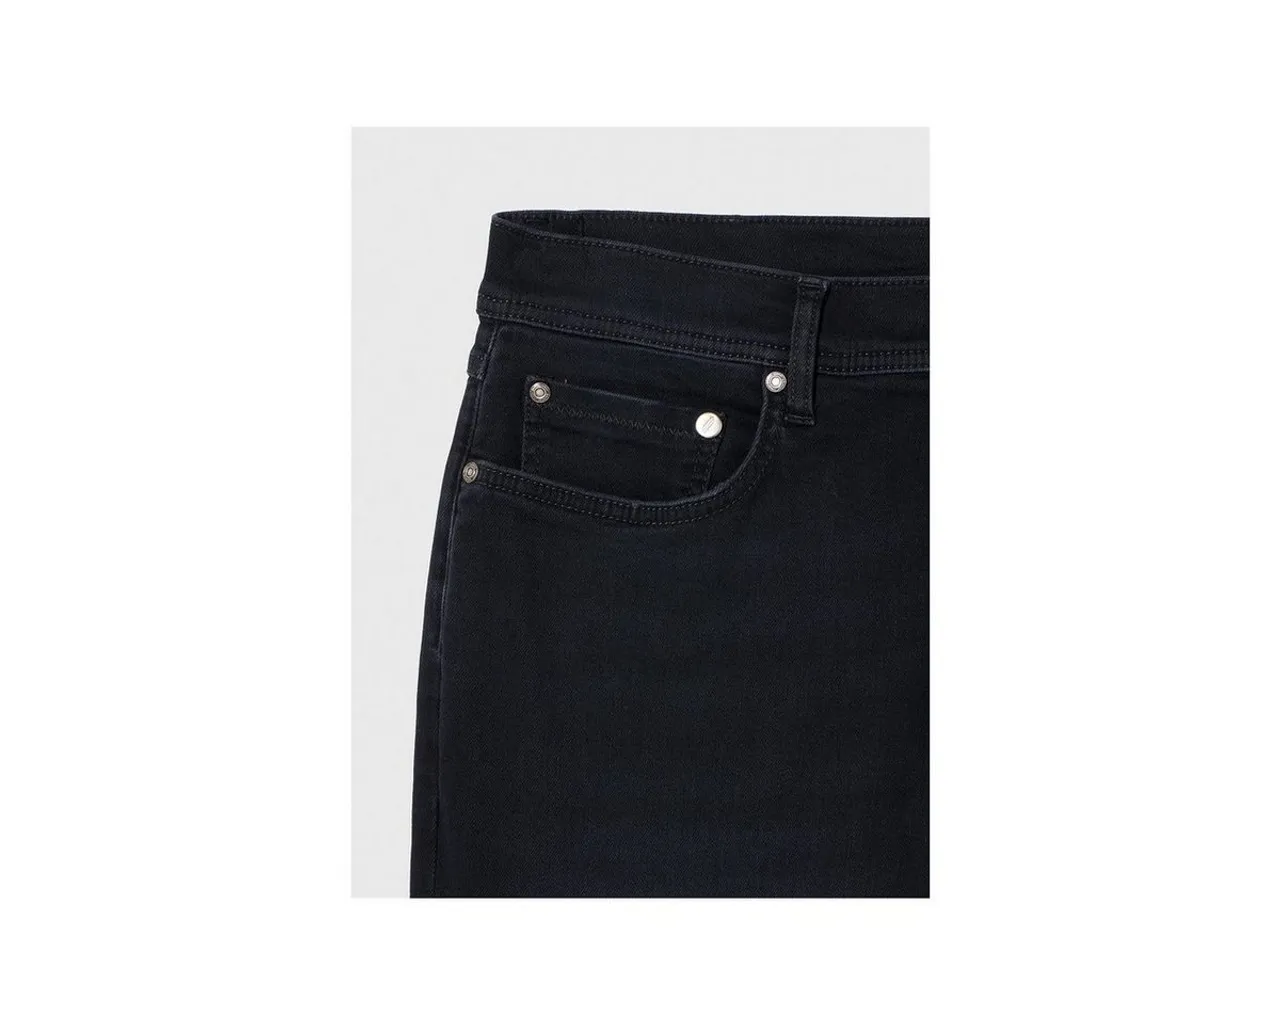 HECHTER PARIS 5-Pocket-Jeans blau (1-tlg)